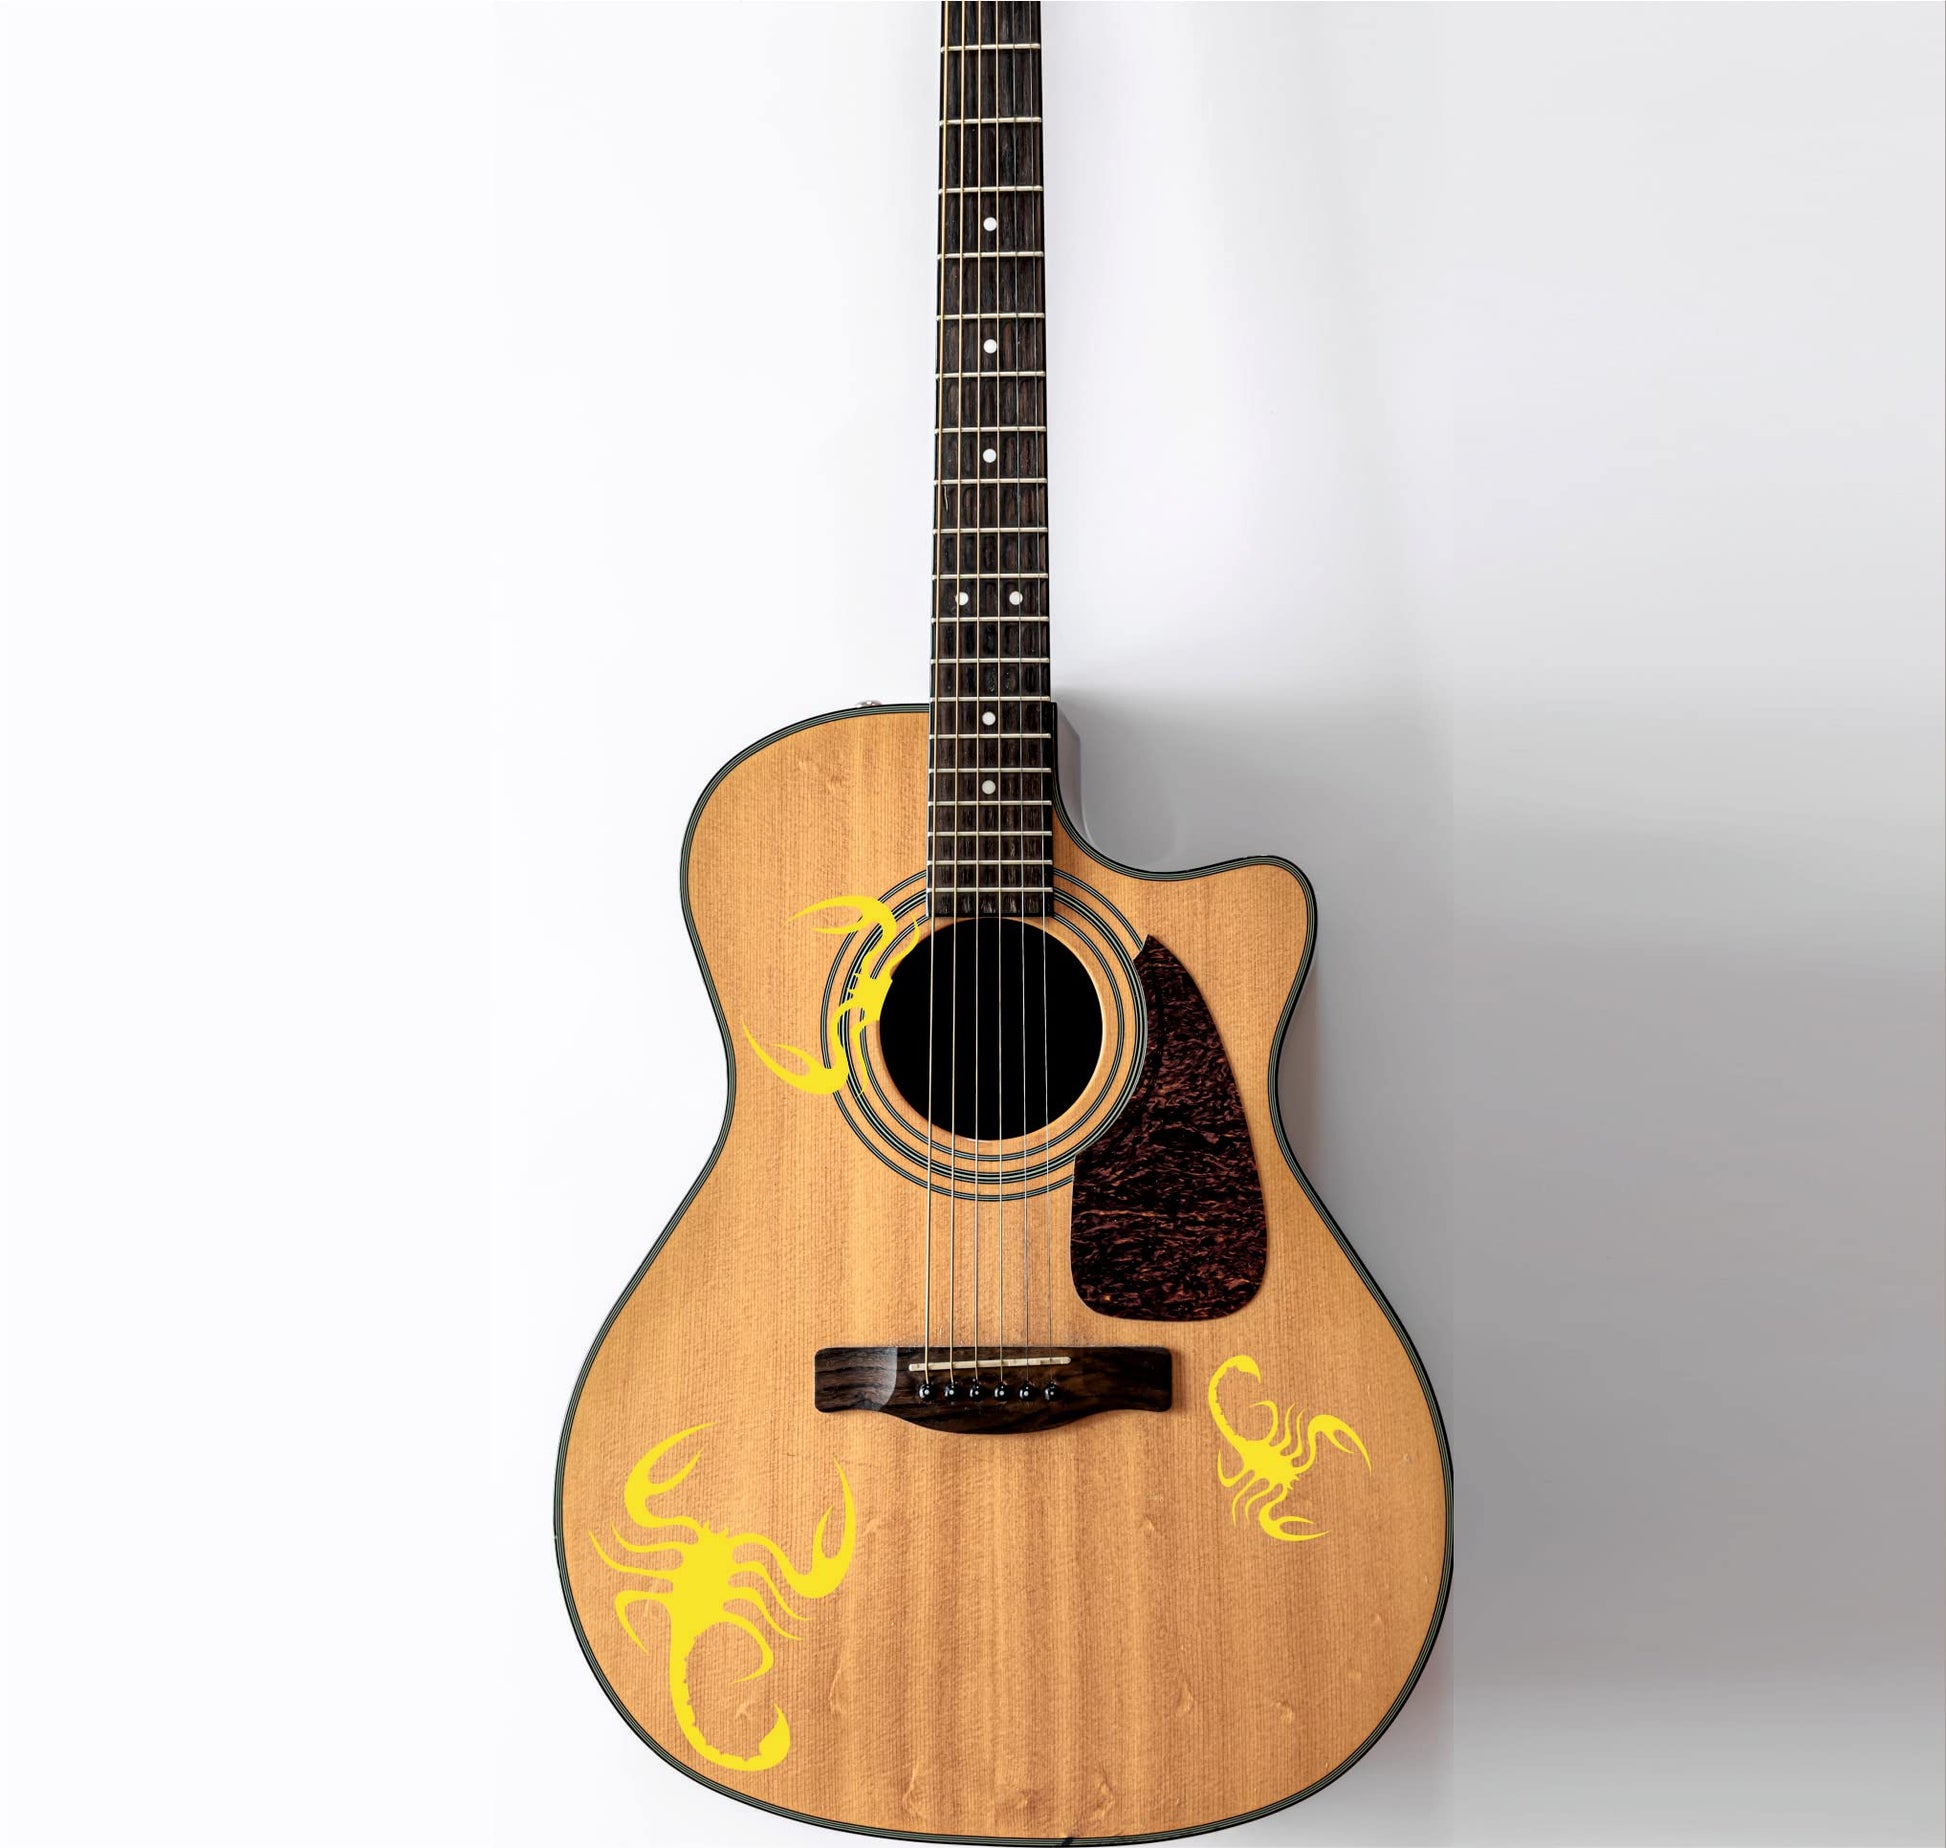 DualColorStampe Adesivi per chitarra classica acustica elettrica basso (kit da 3 pezzi) scorpione accessori per chitarra - X0011 a €17.99 solo da DualColorStampe